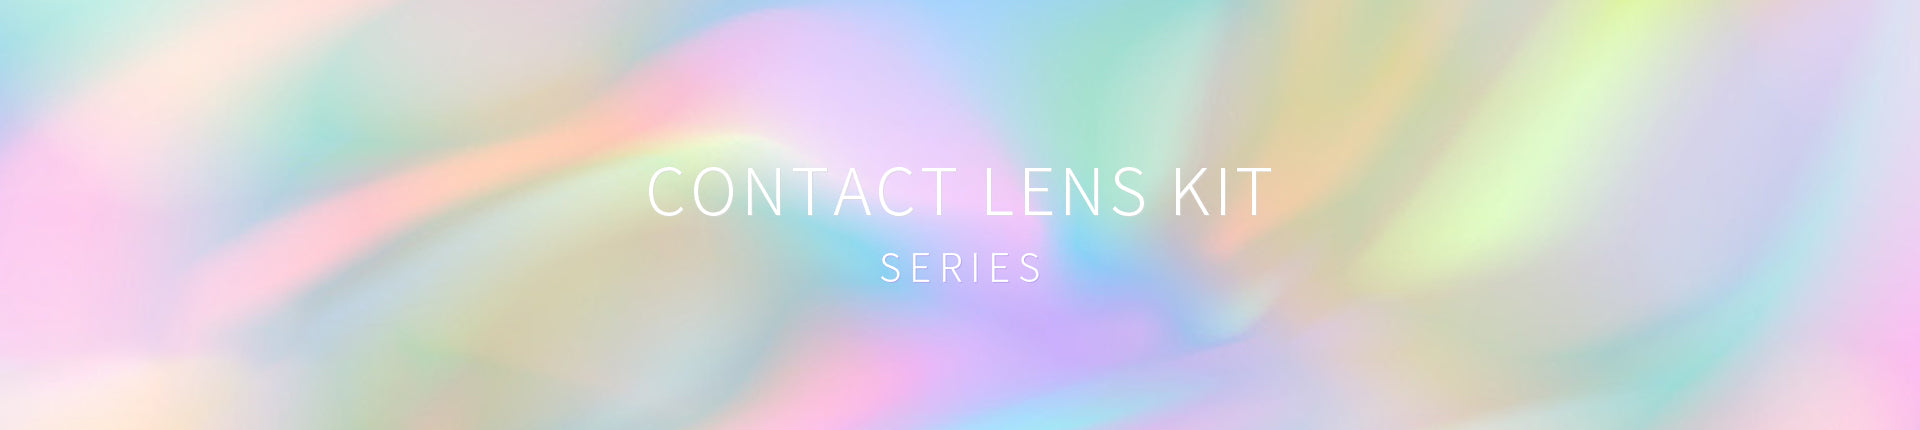 Contact Lens Kit